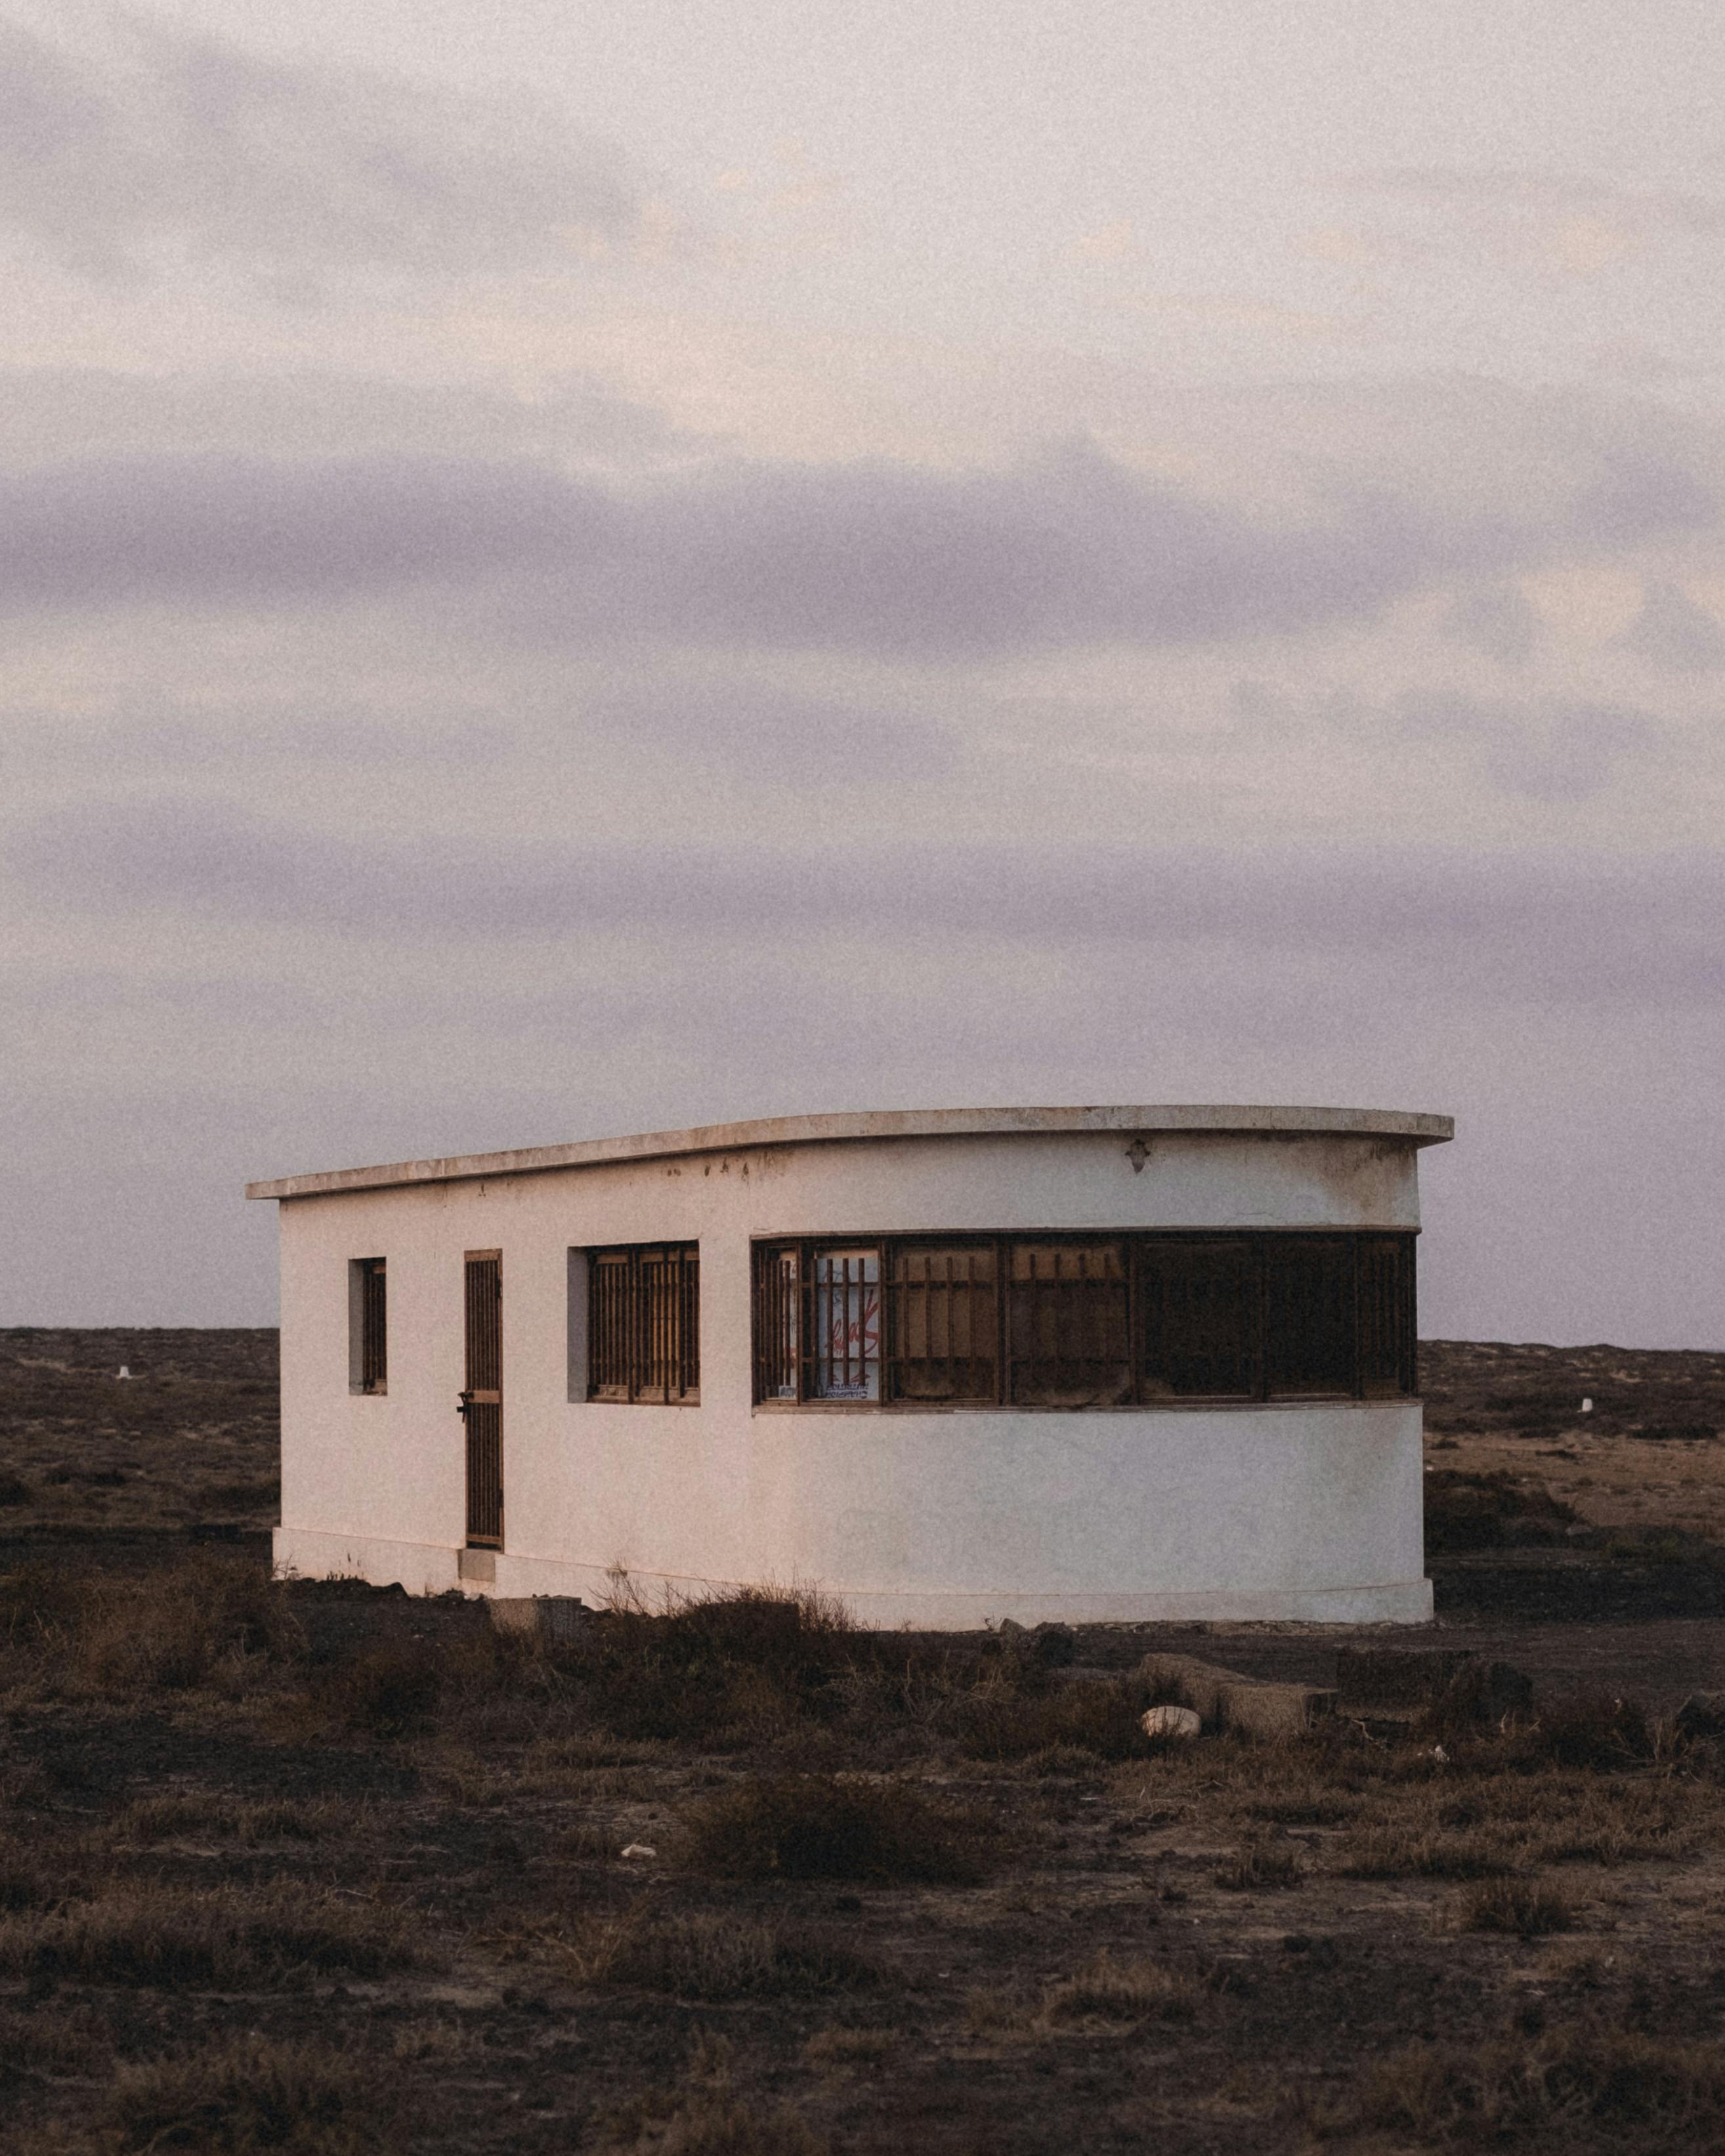 Deserted building in the desert